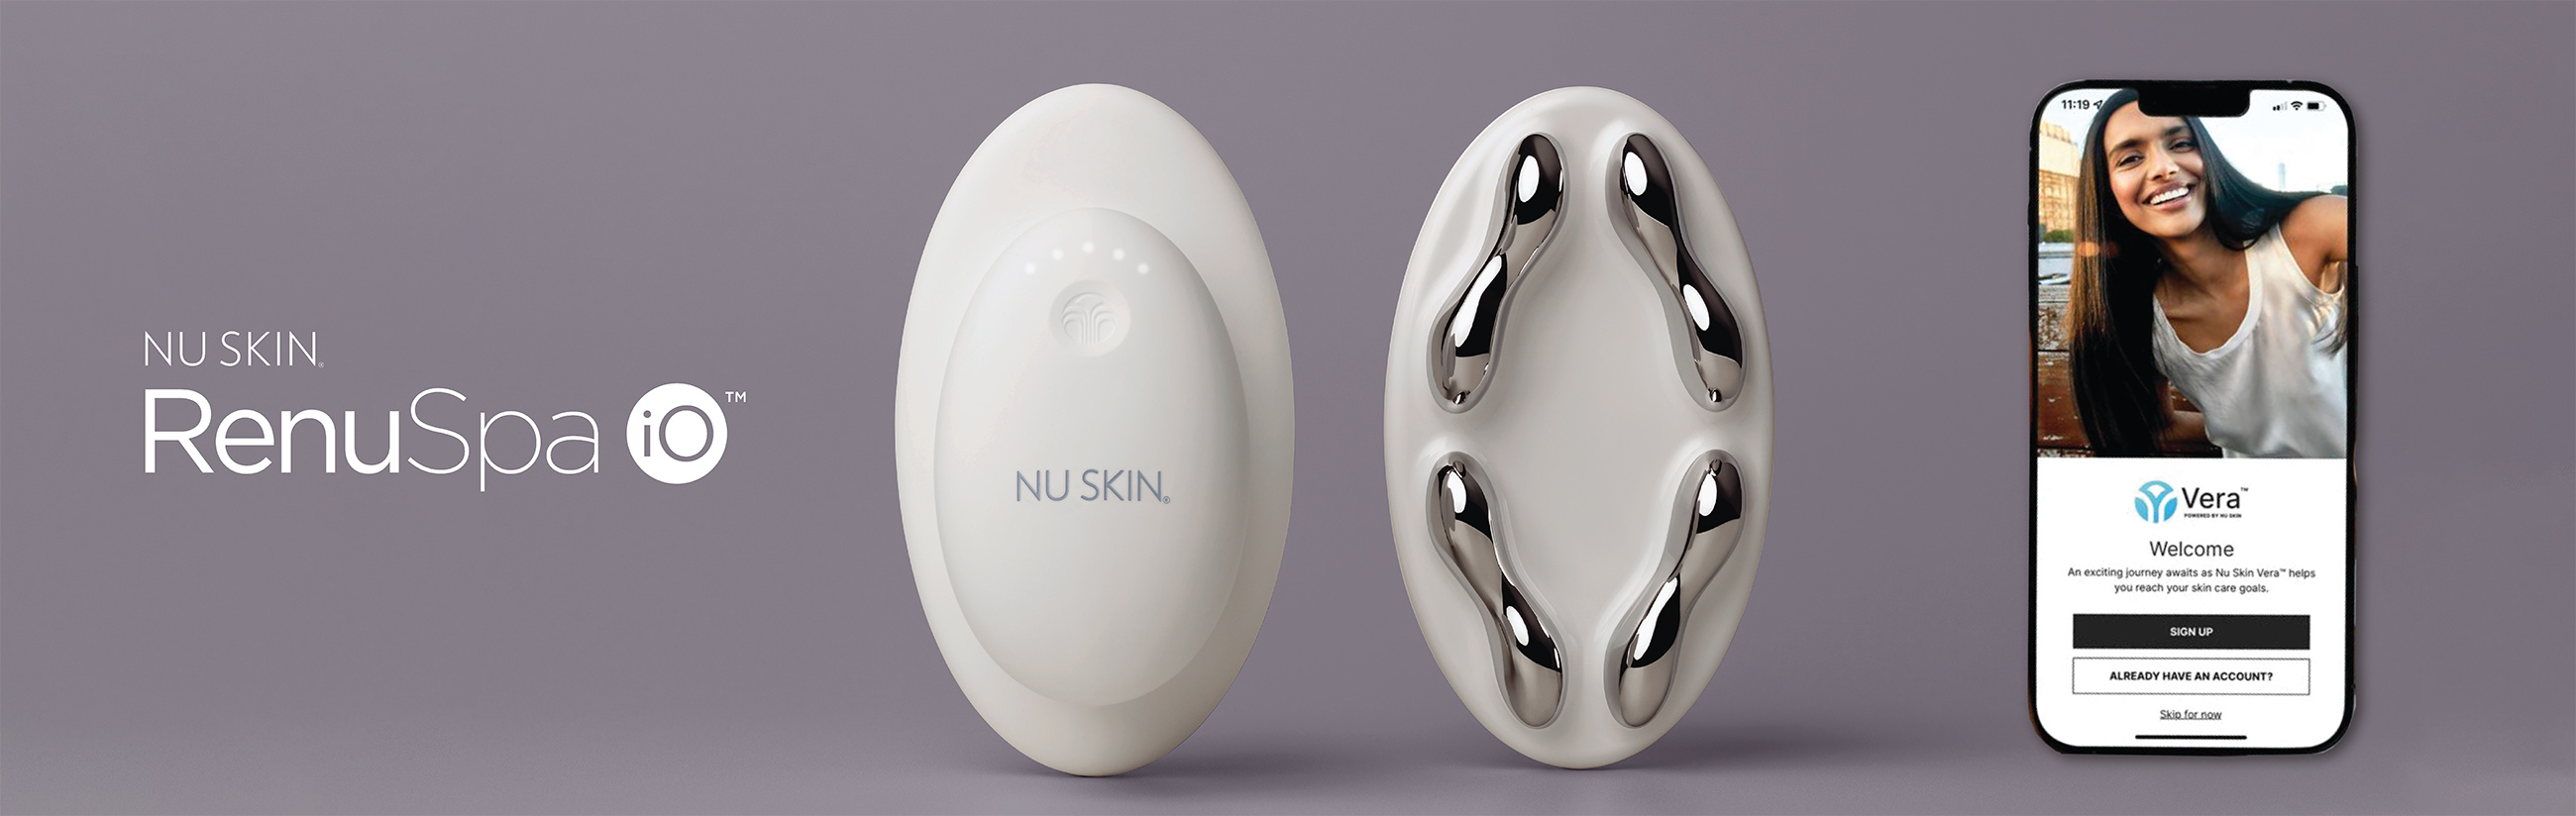 Introducing Nu Skin RenuSpa iO